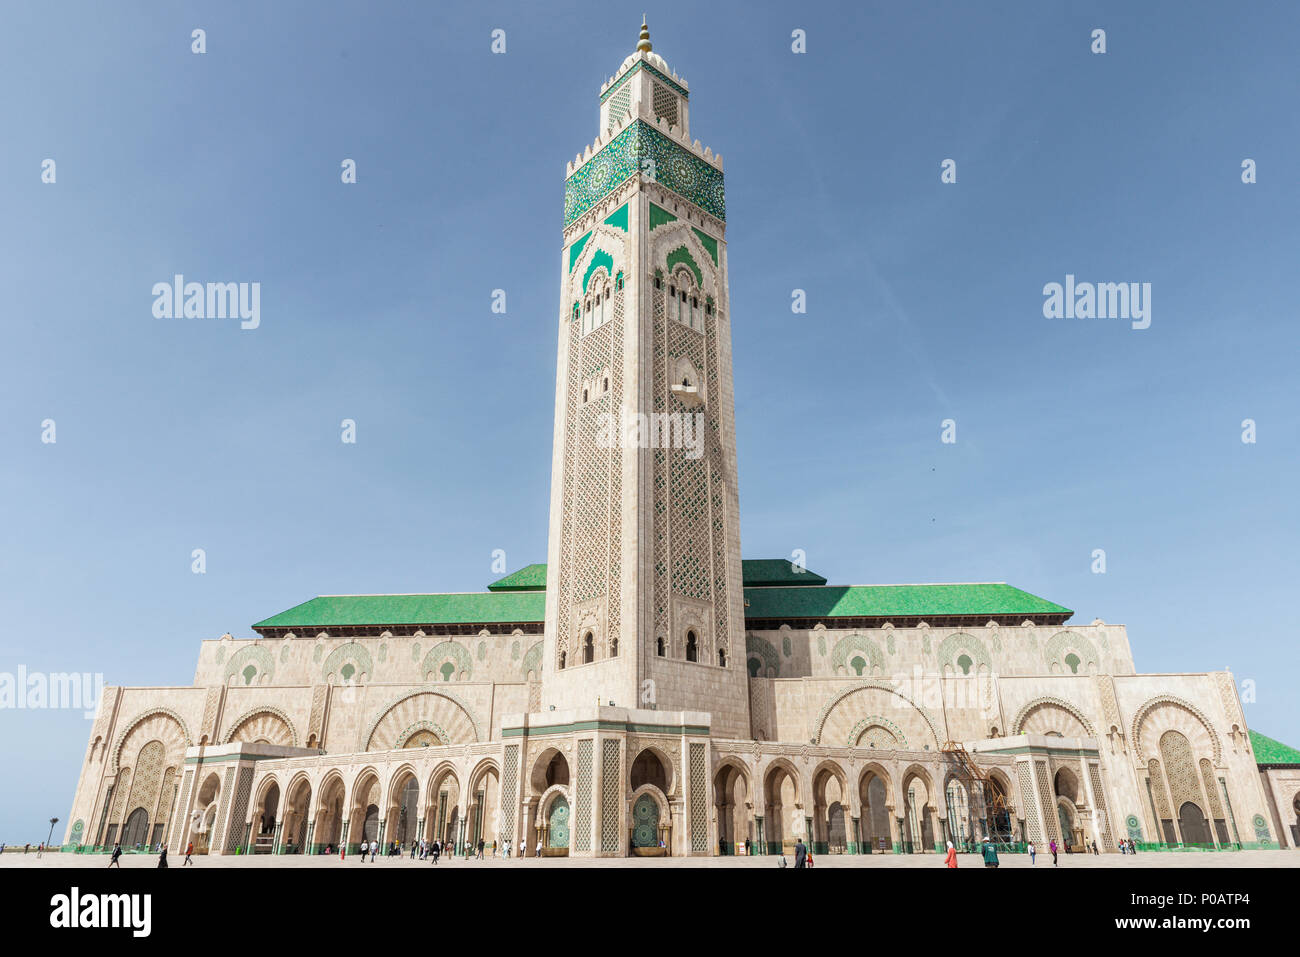 Hassan-II.-Moschee, die Grande Mosquée Hassan II., der maurischen Architektur, mit 210 m höchste Minarett der Welt, Casablanca, Marokko Stockfoto